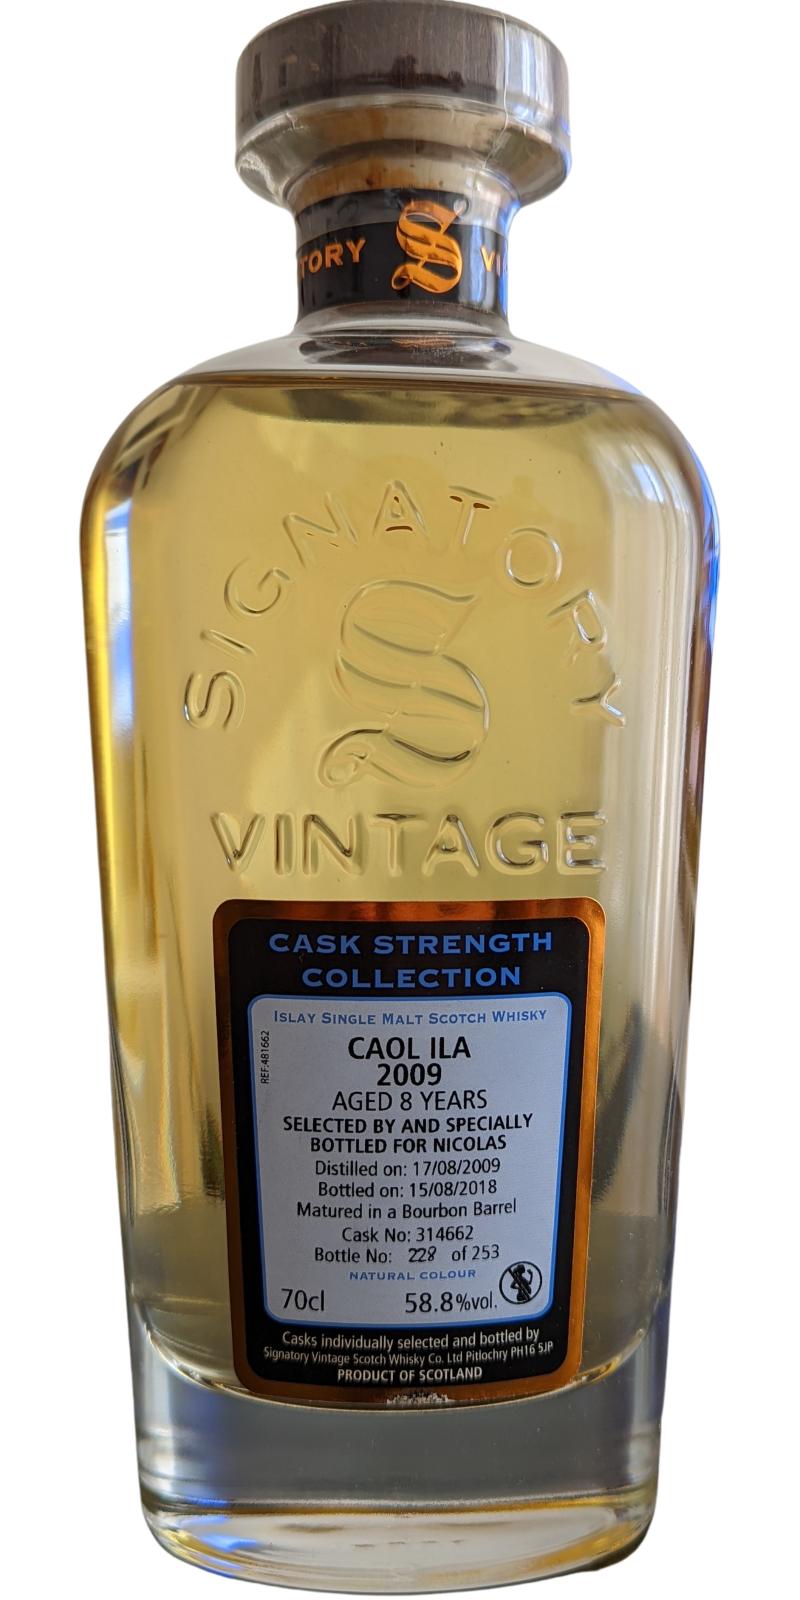 Caol Ila 2009 SV Cask Strength Collection Bourbon Barrel Nicolas 58% 700ml